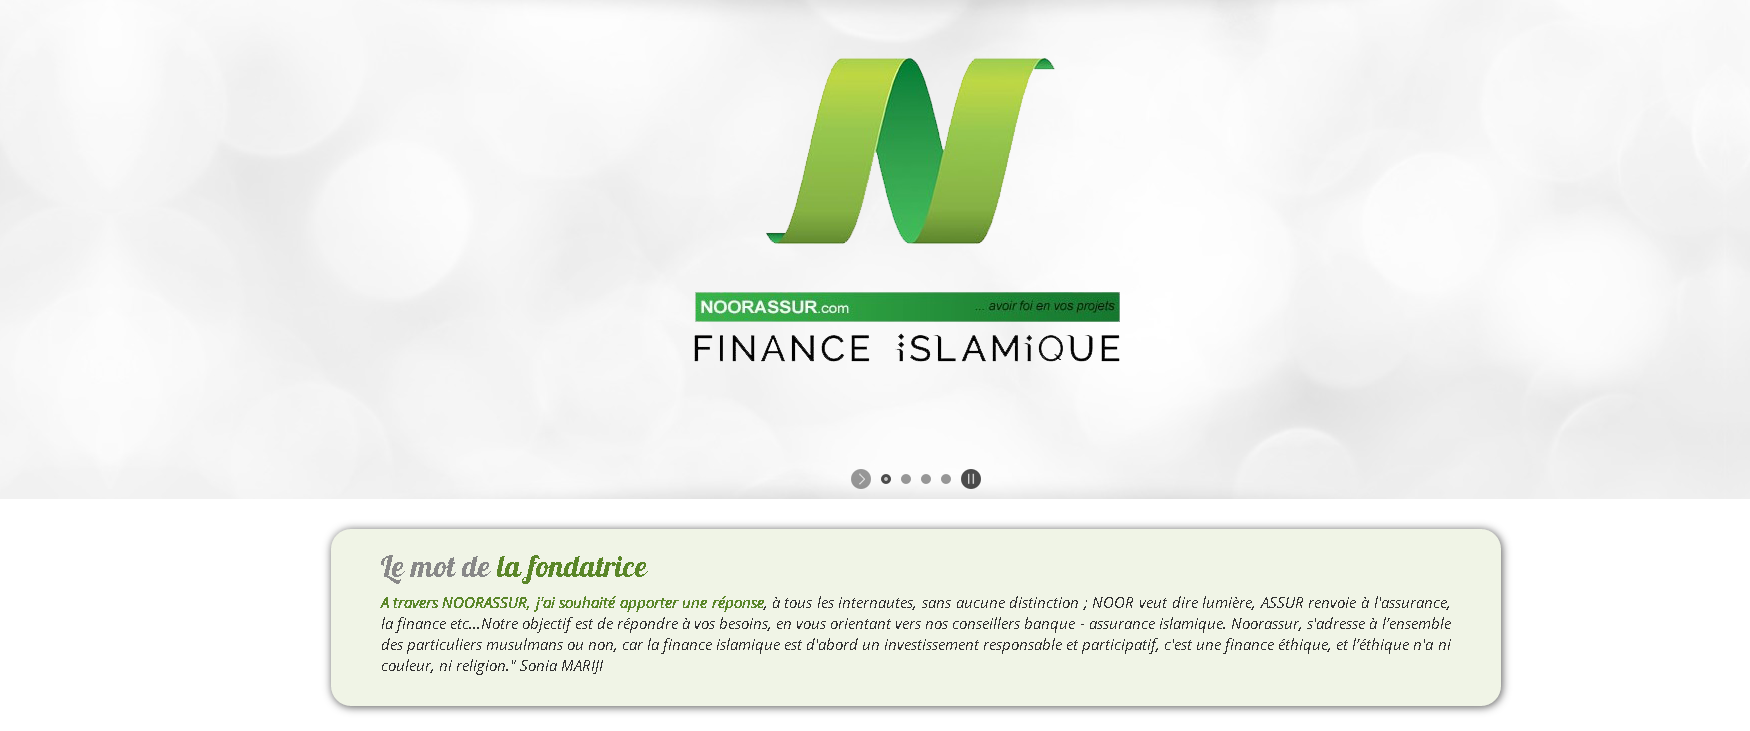 Une agence bancaire de finance islamique a ouvert ses portes en France 